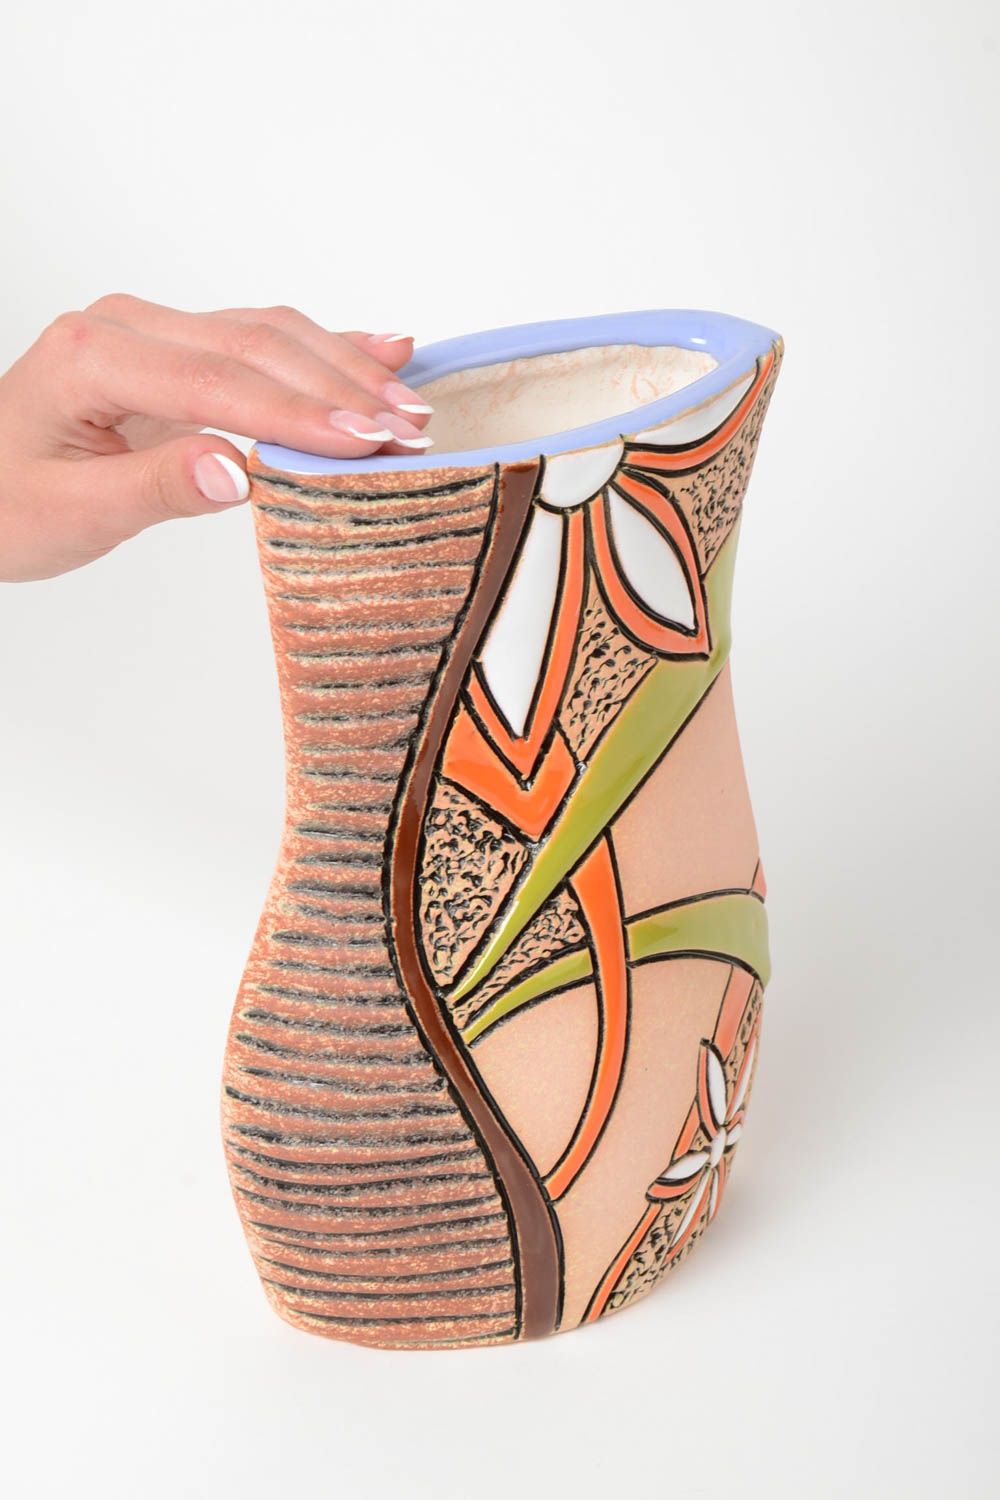 Полуфарфоровая ваза керамическая расписанная пигментами хэнд мэйд объемом 1.5 л фото 5